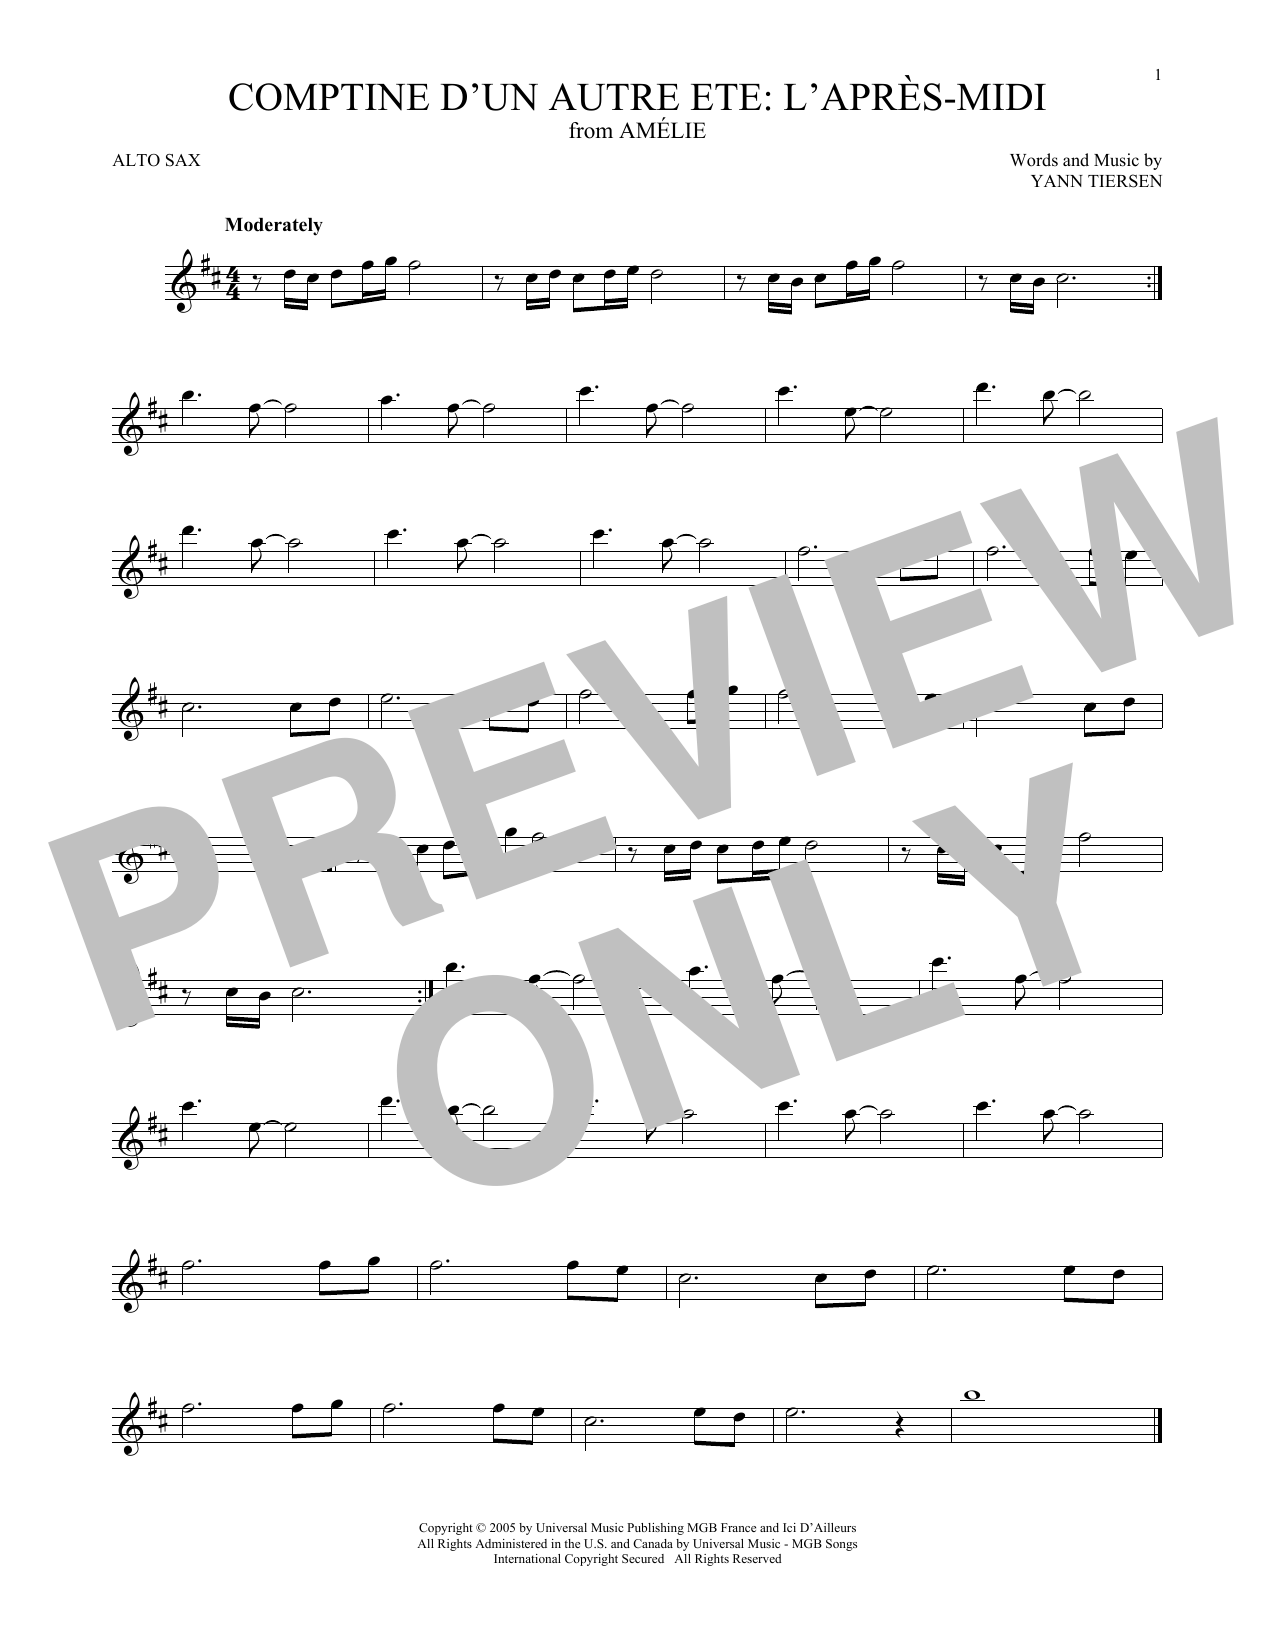 Yann Tiersen Comptine d'un autre été: L'après-midi (from Amelie) sheet music notes and chords arranged for Trumpet Solo